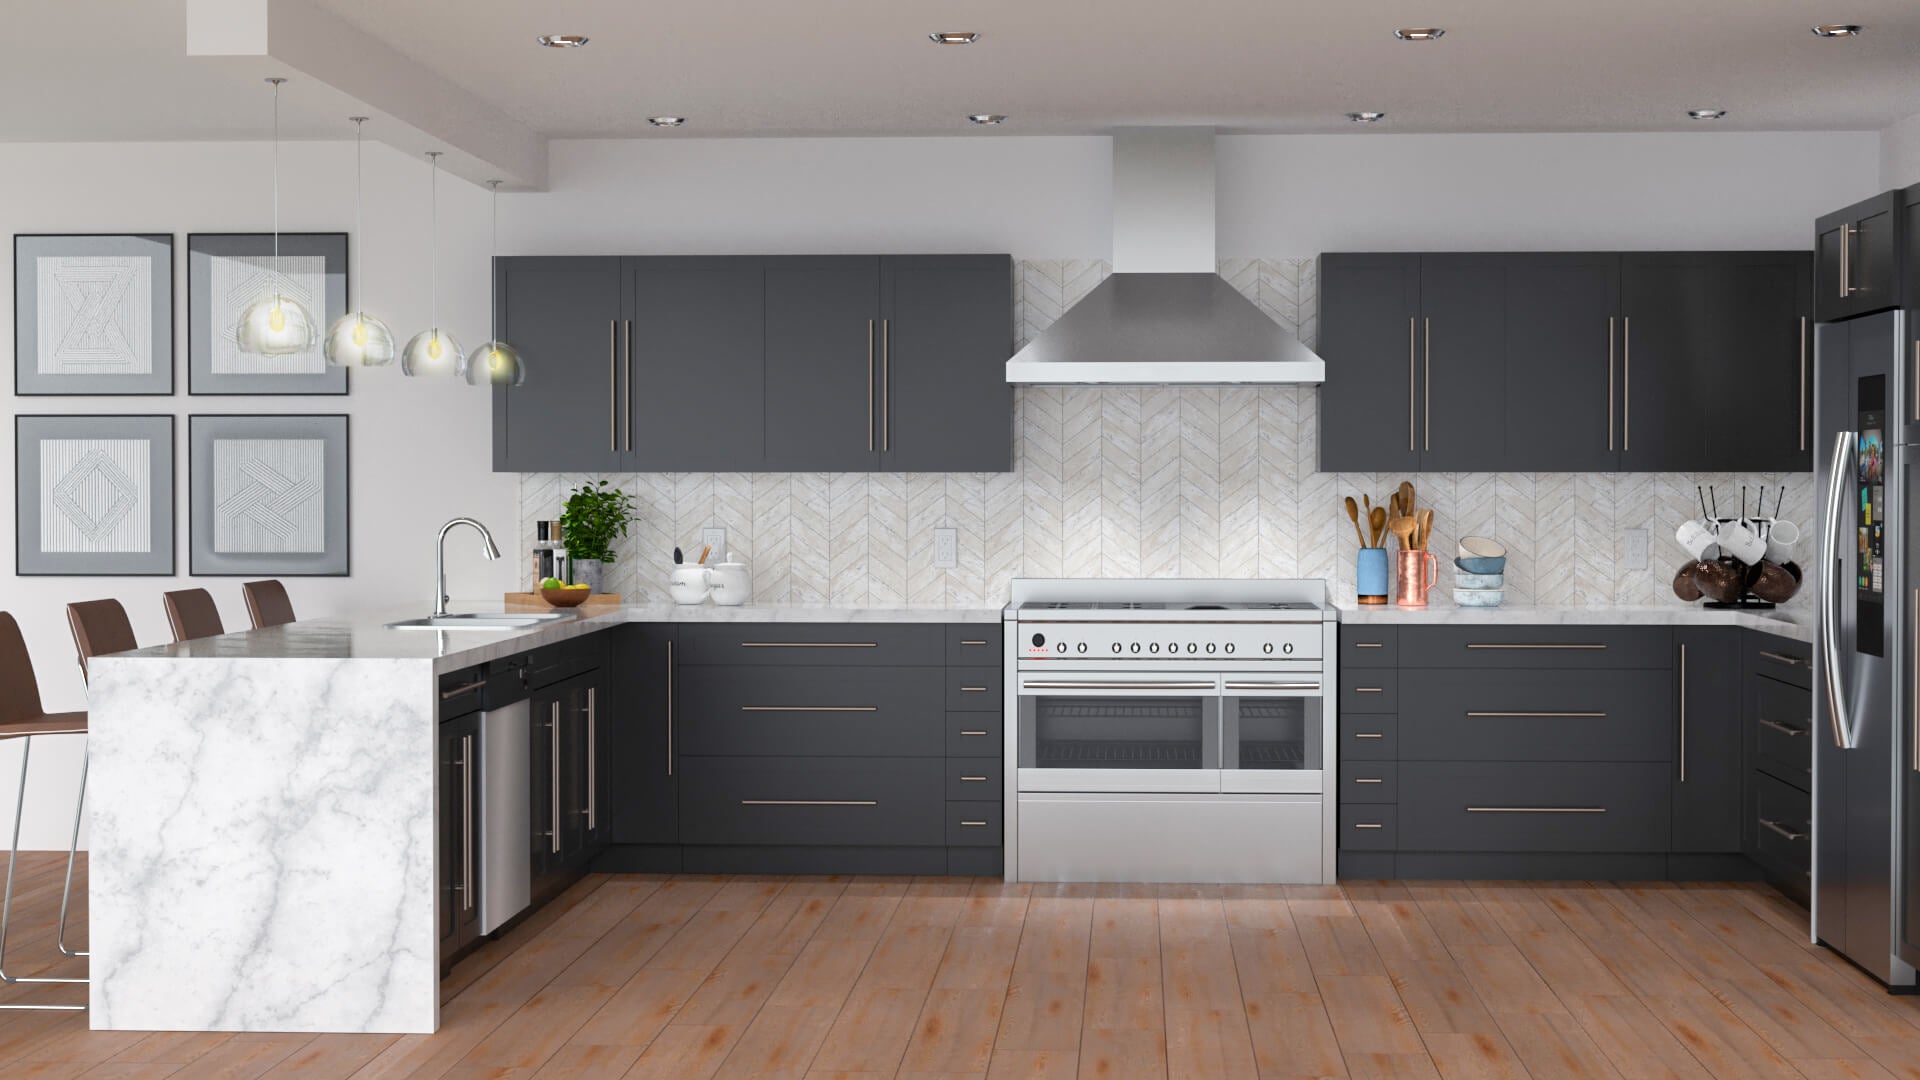 Stylish And Useful Wholesale whole kitchen cabinet set In Many Sizes 